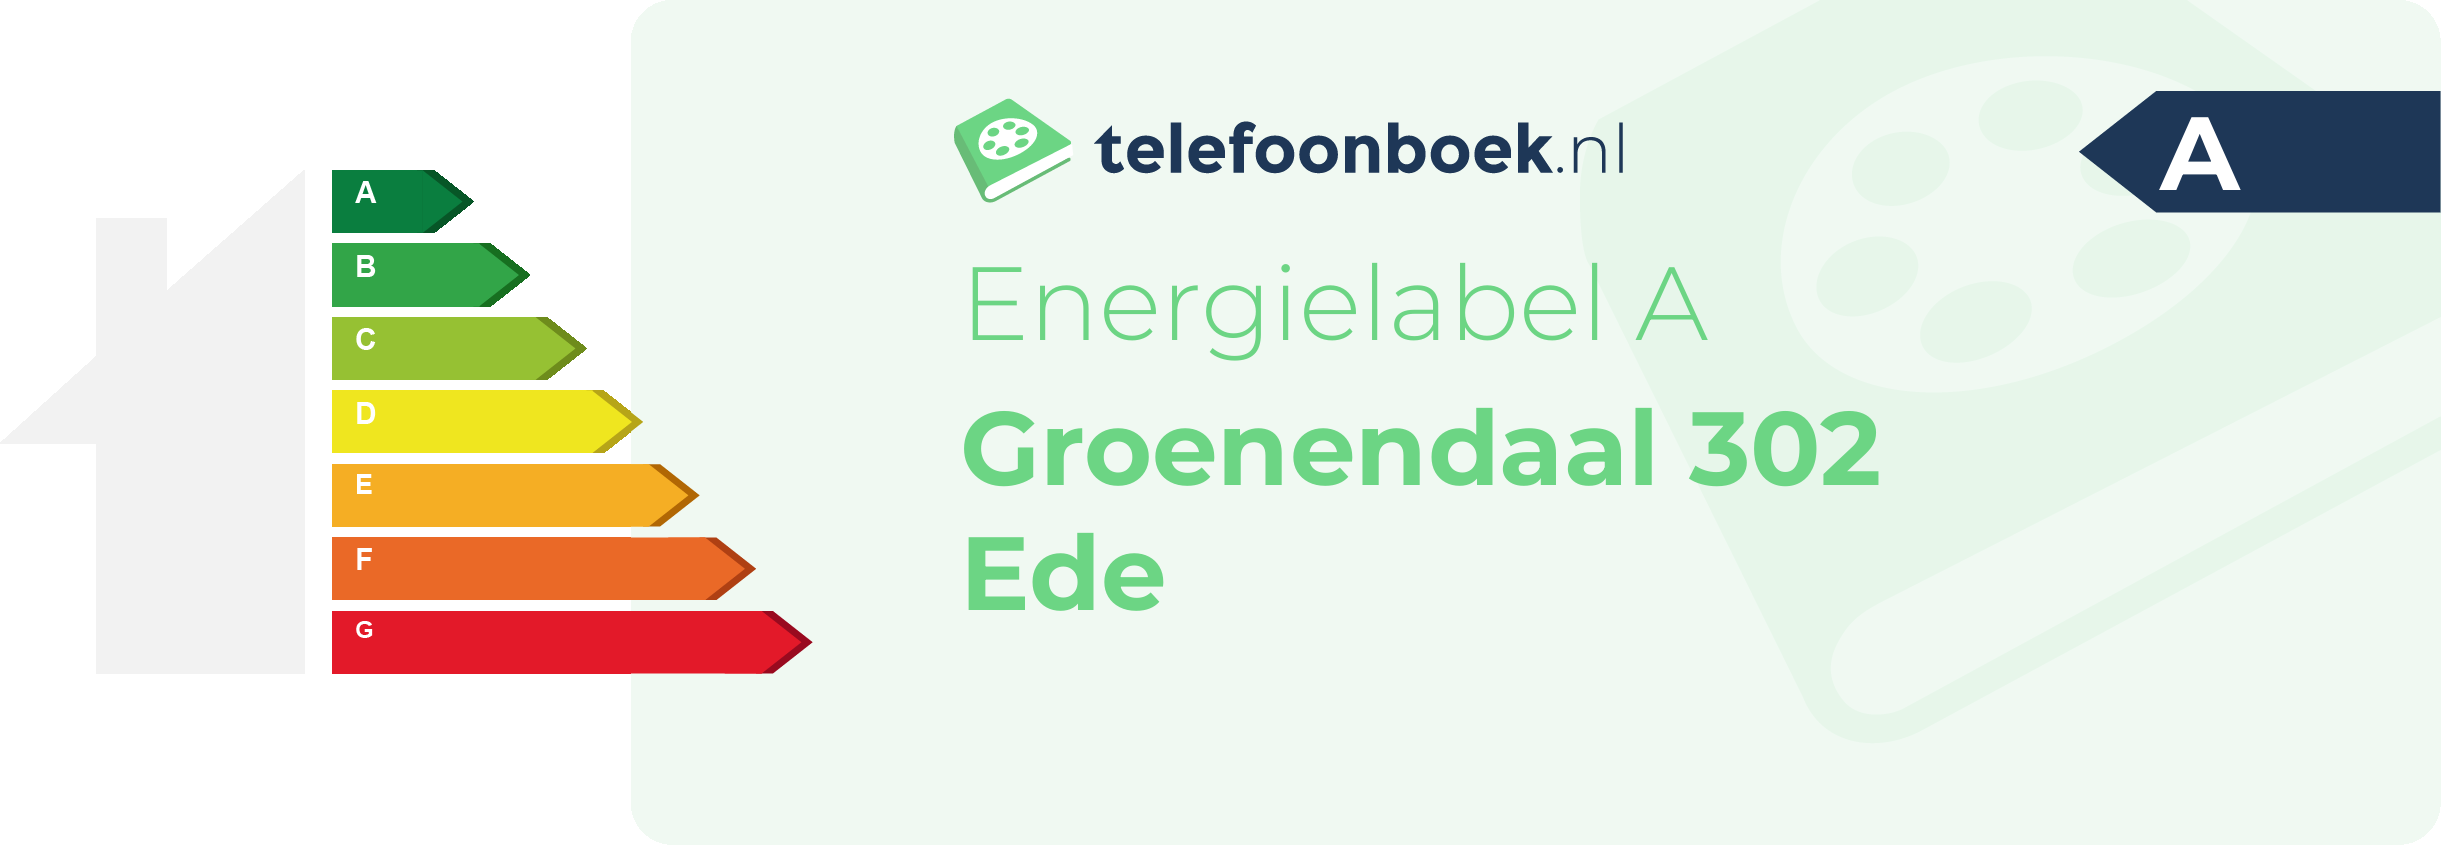 Energielabel Groenendaal 302 Ede